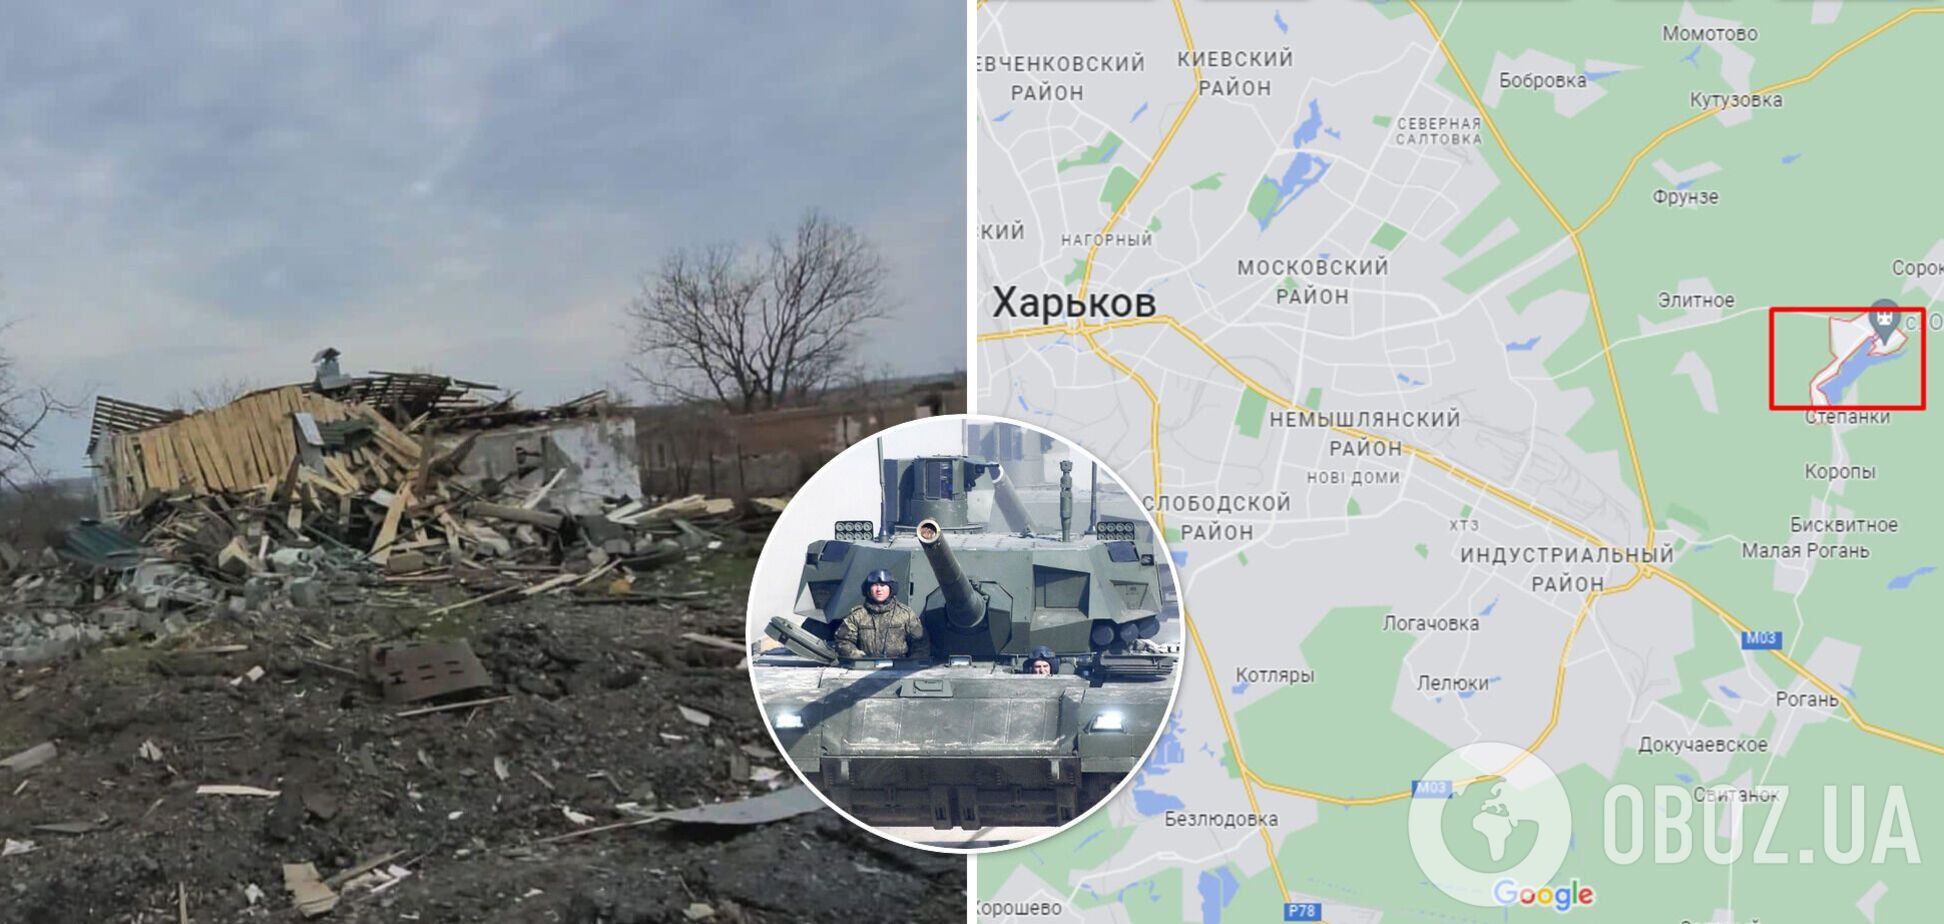 Война в Украине: что происходило в Ольховке